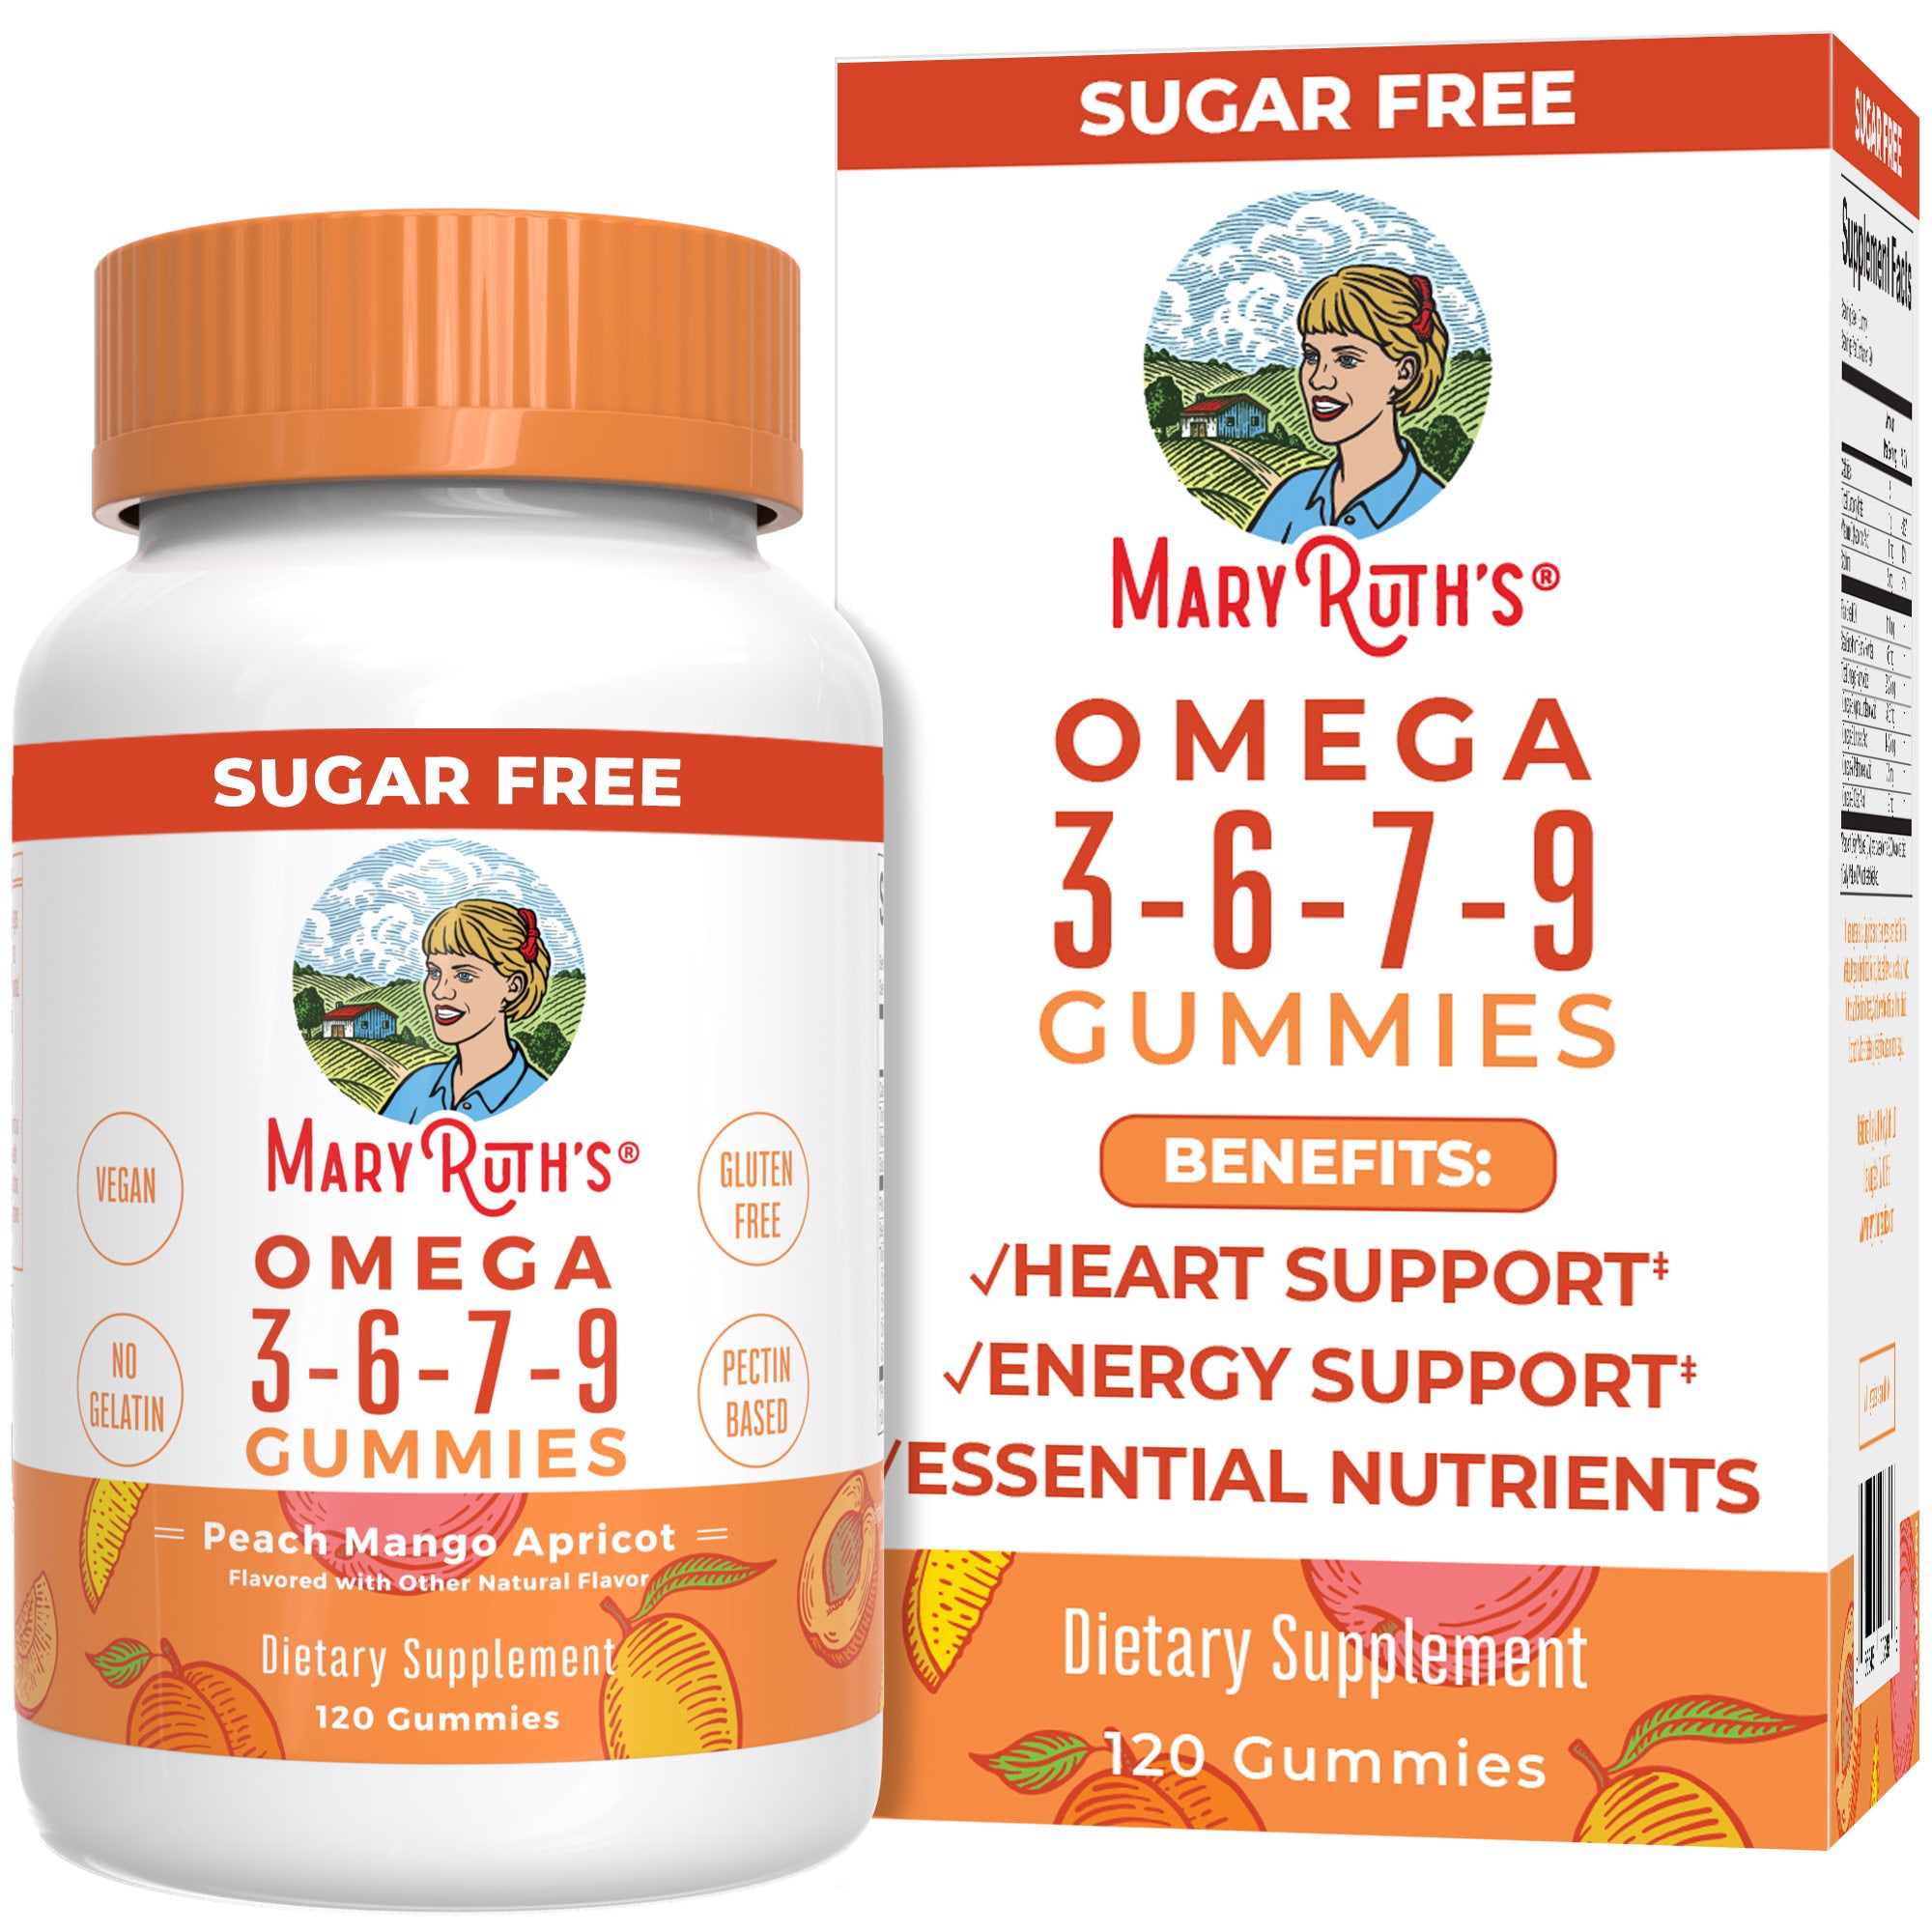 Omega 3-6-7-9 Gummies